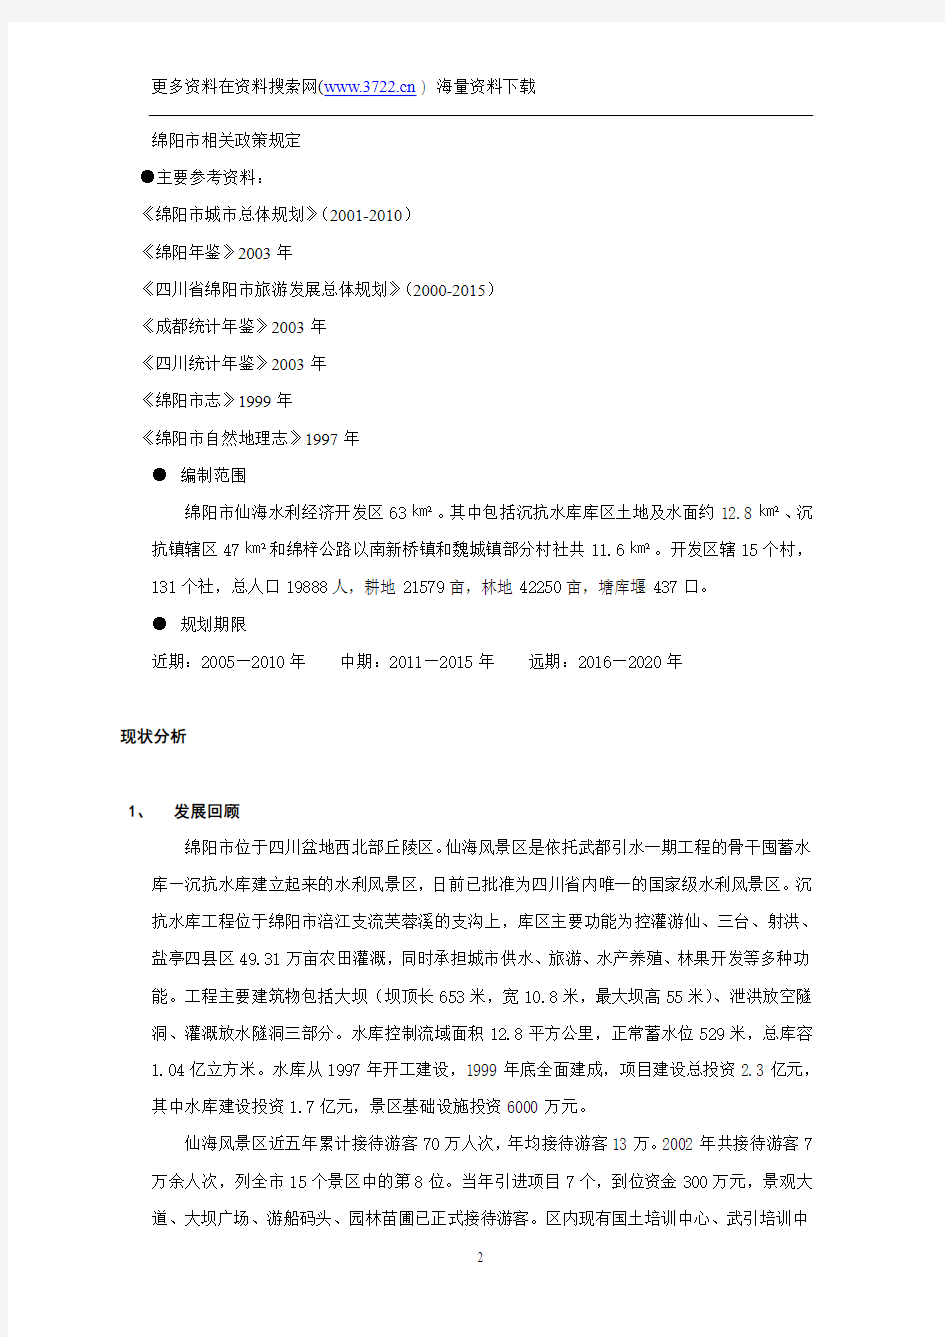 四川绵阳仙海水利风景区旅游发展总体规划(DOC 54页)